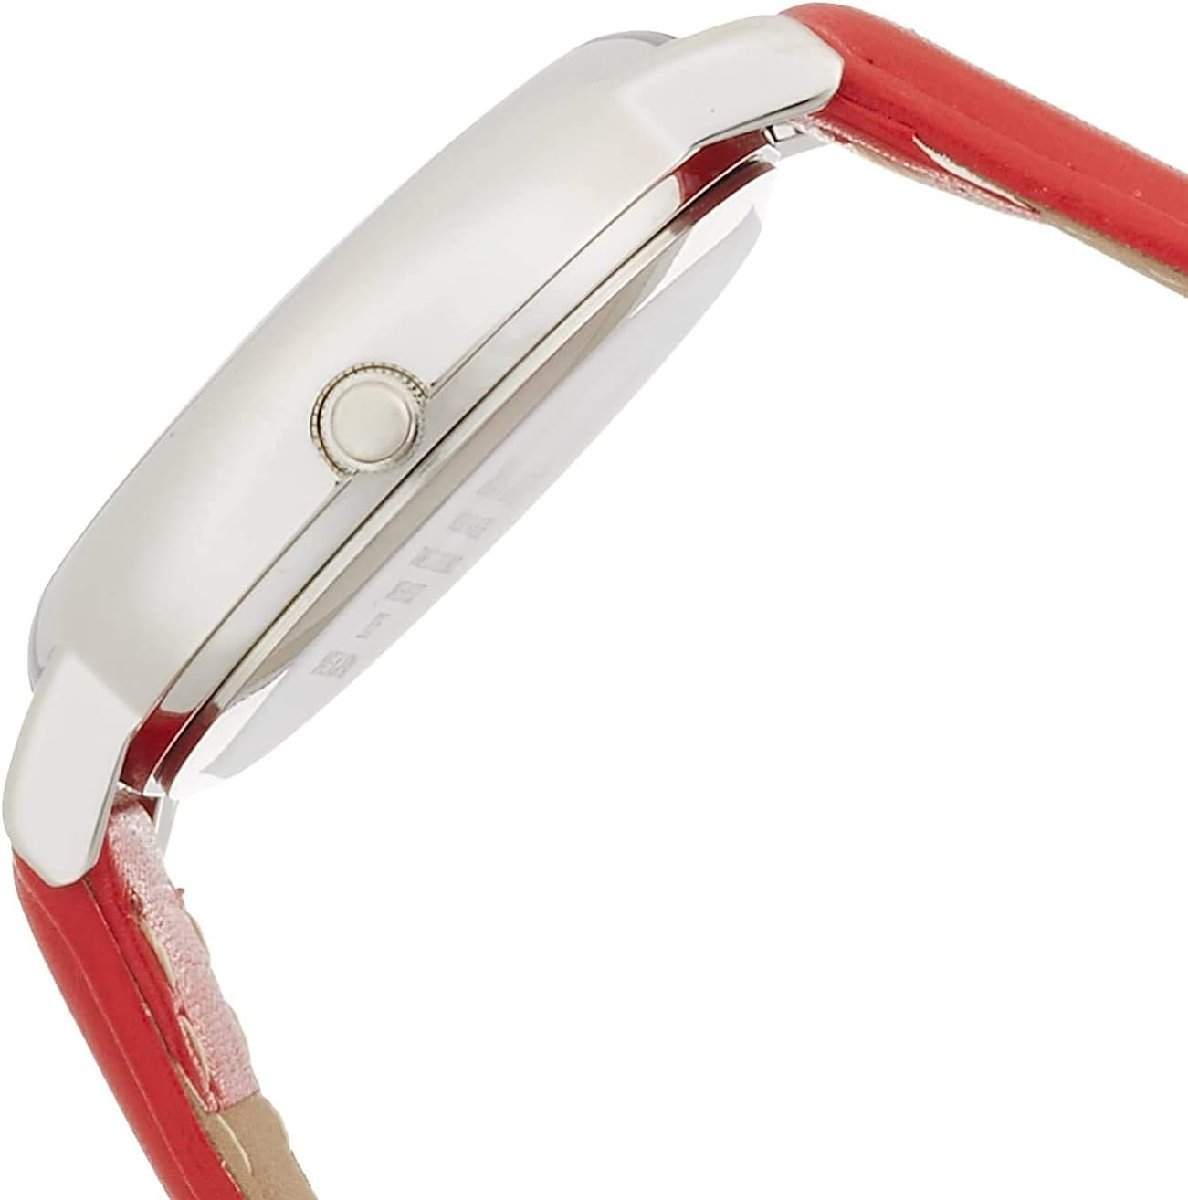  CITIZEN   наручные часы  ...  водонепроницаемый   кожа  ремень   сделано в Японии  0017N002  красный  4966006059830/ доставка бесплатно 